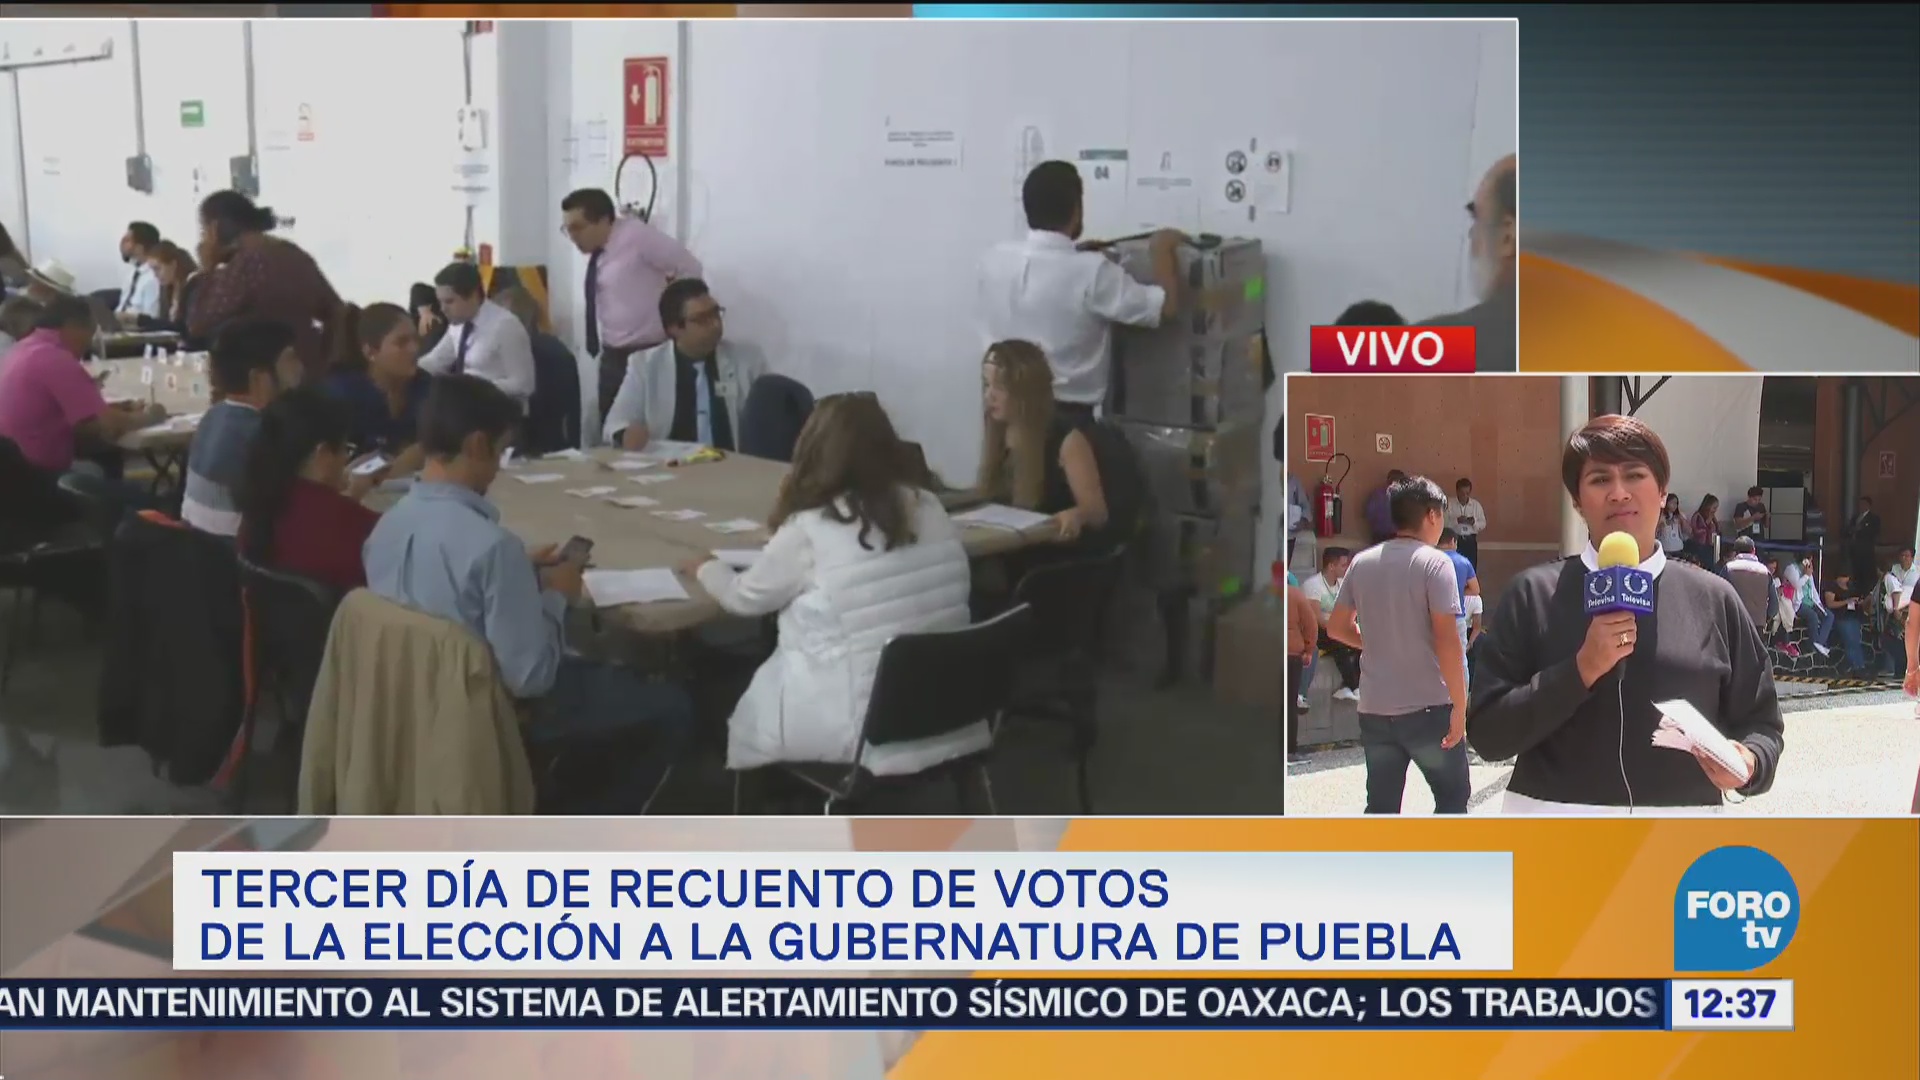 Alcanza casi 50 recuento de votos gubernatura de Puebla